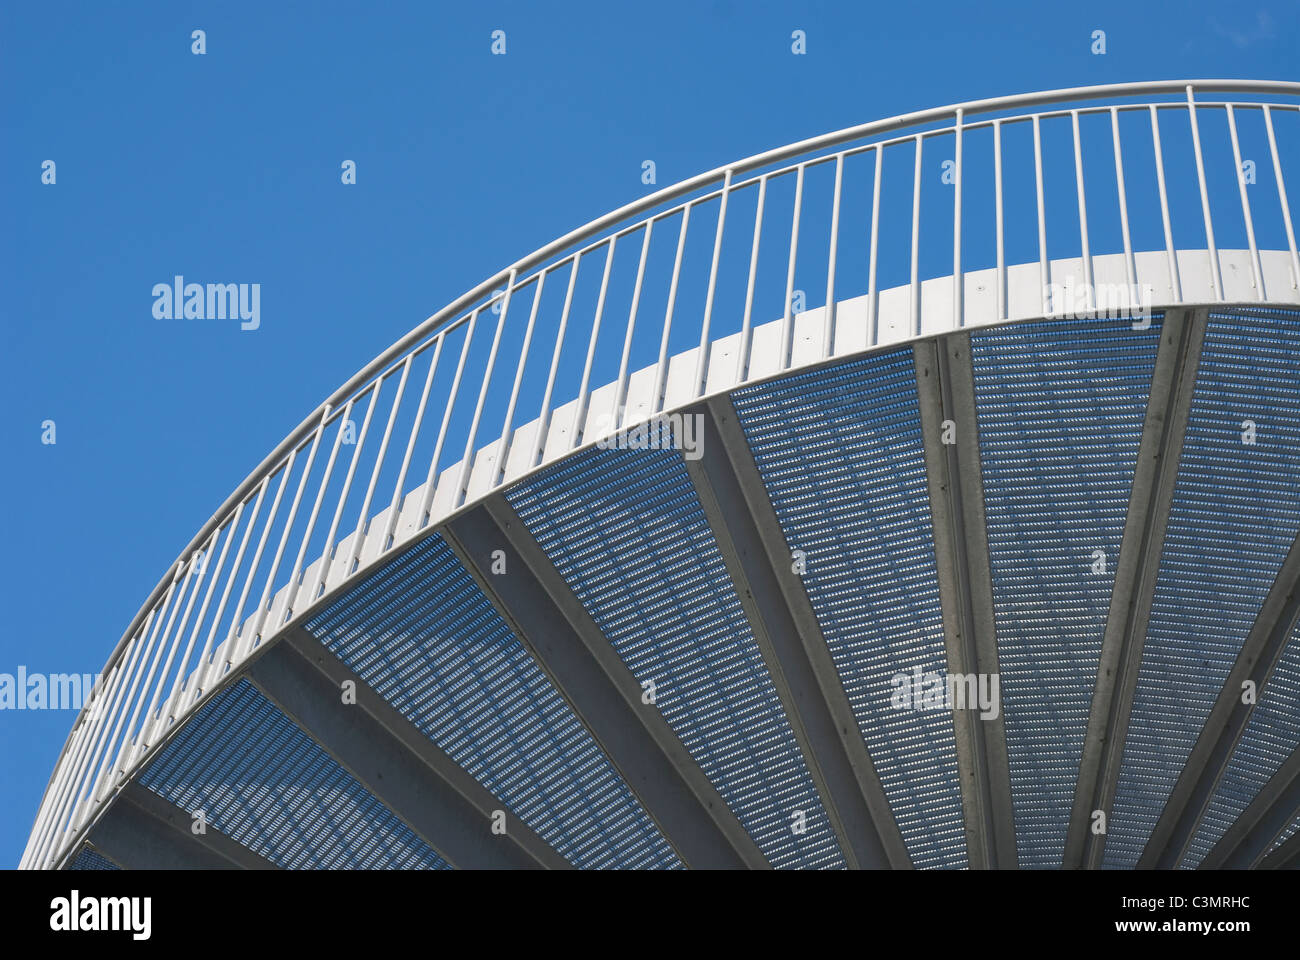 Escaleras modernas como un elemento arquitectónico contemporáneo Foto de stock